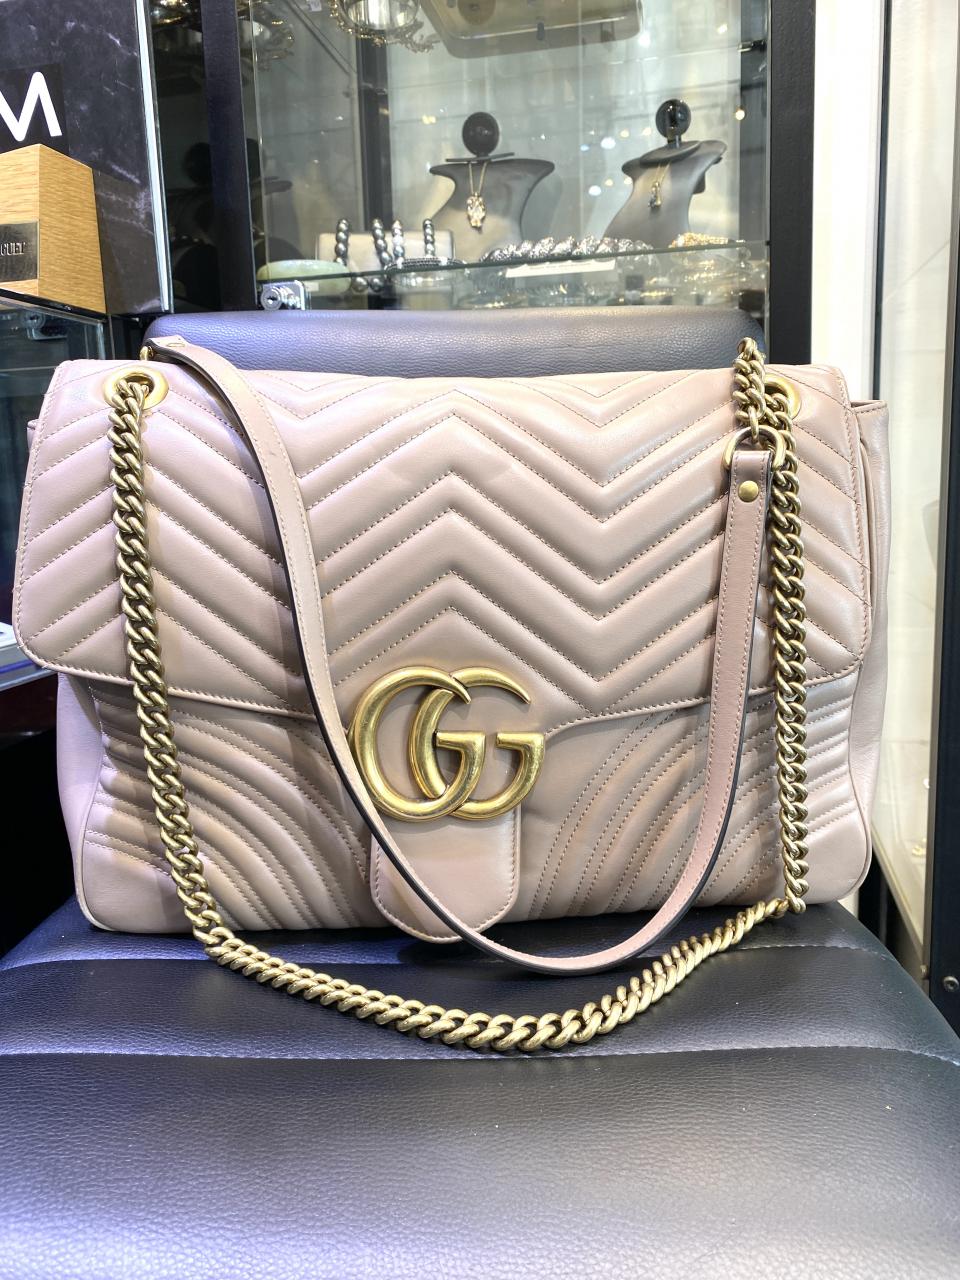 Gucci Marmont Large Shoulder Bag